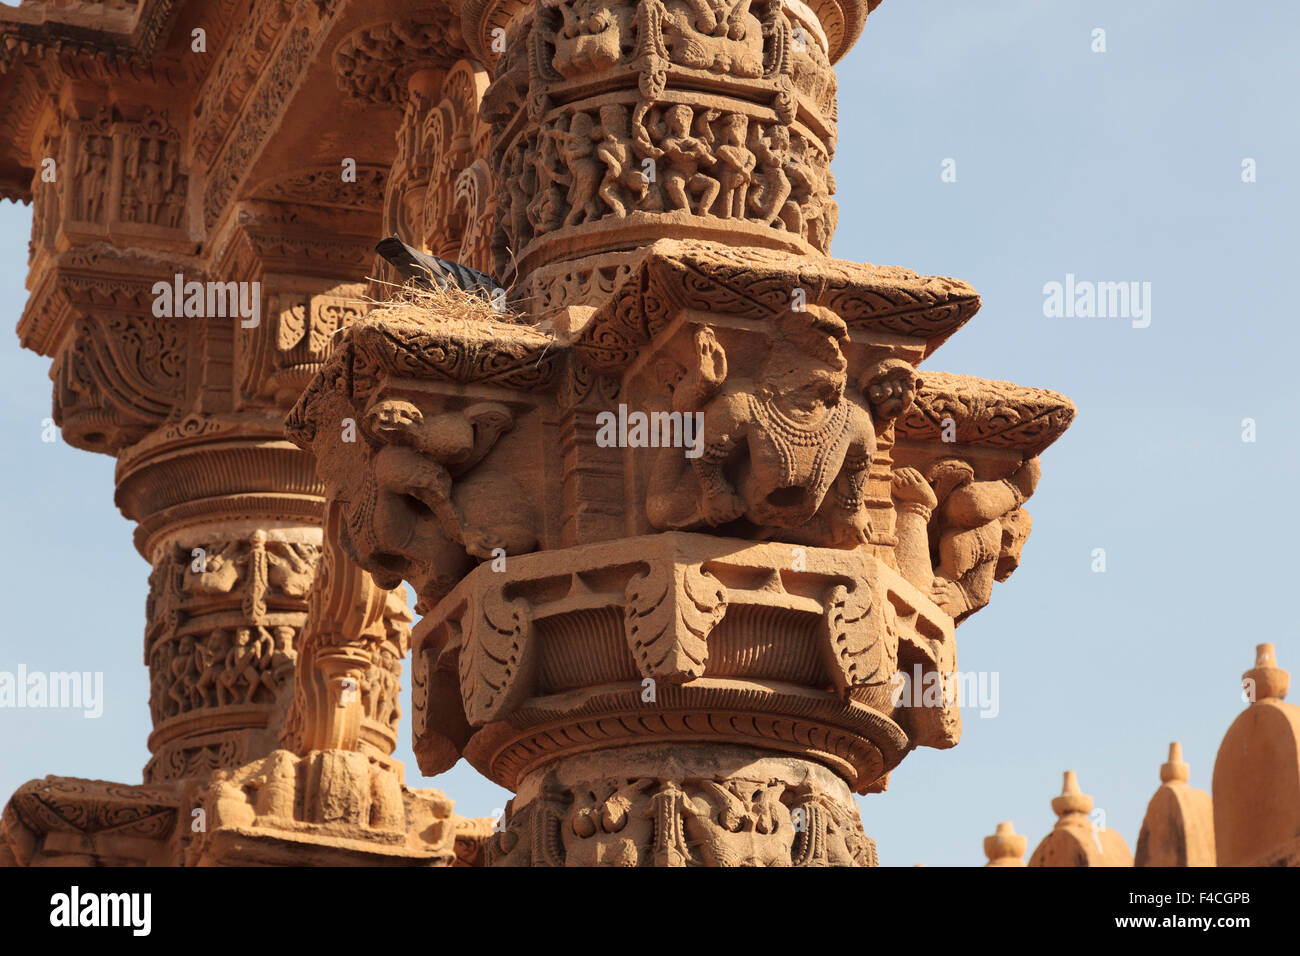 Indien, Rajasthan, Jaisalmer. Vögel nisten auf alten Felsen schnitzen an der Jain-Tempel. Stockfoto